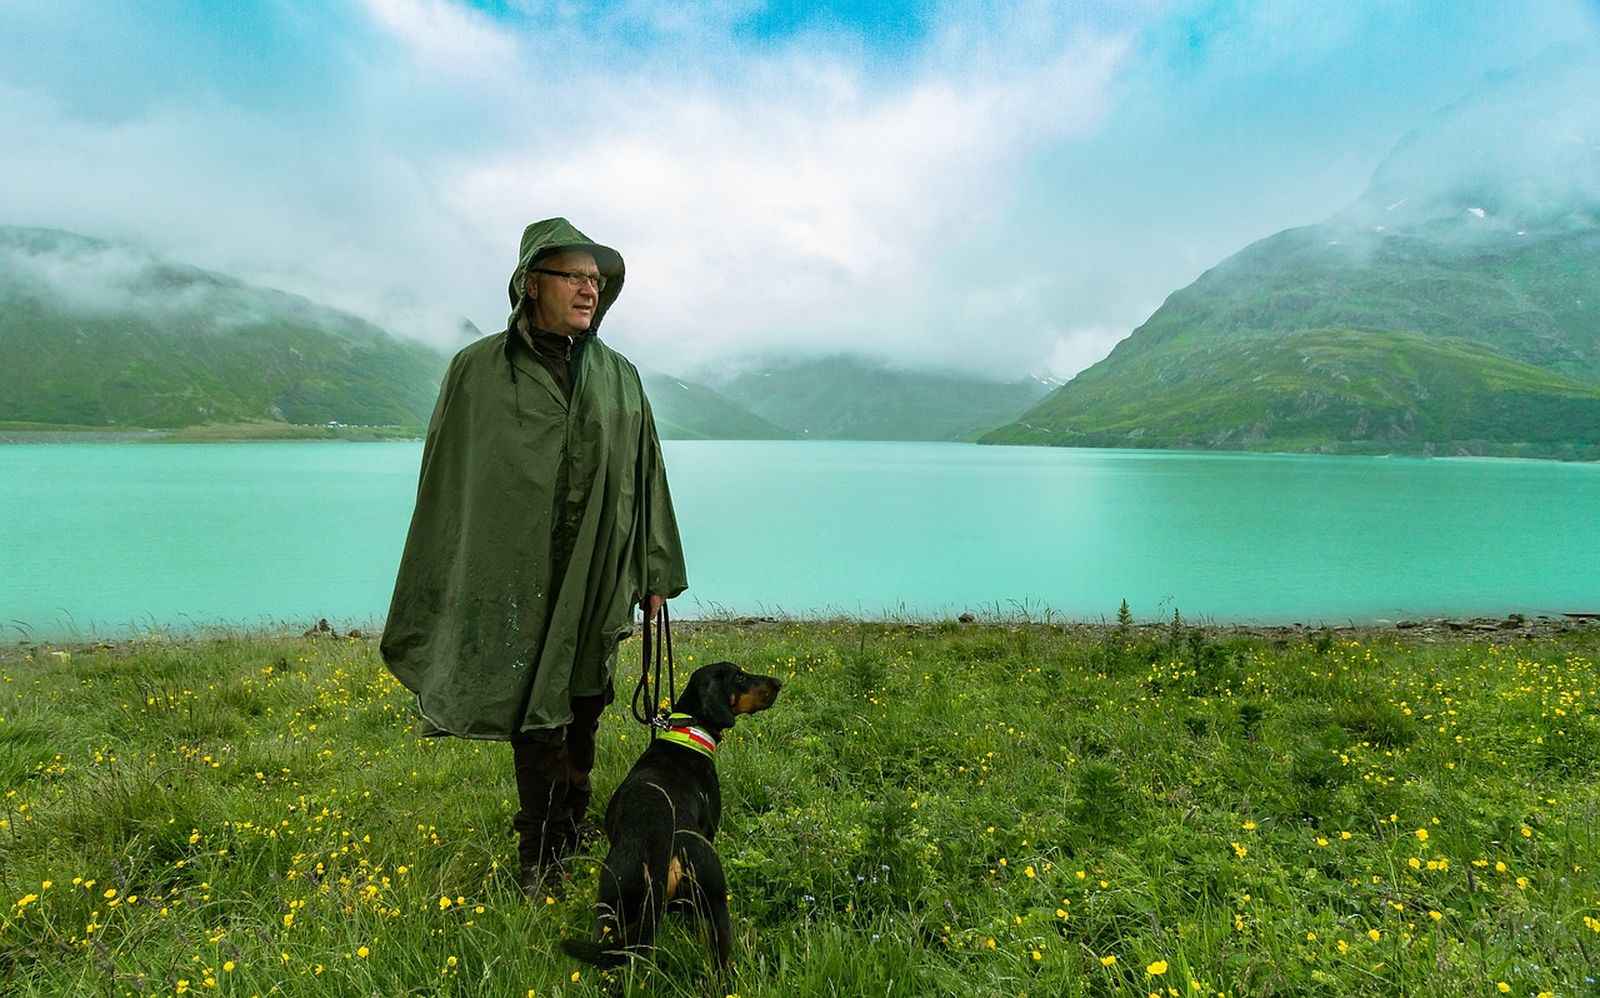 Ein Mann mit Brille und Regencape steht mit seinem angeleinten Jagdhund auf einer Wiese vor einem Bergsee und schaut nach rechts in die Ferne.